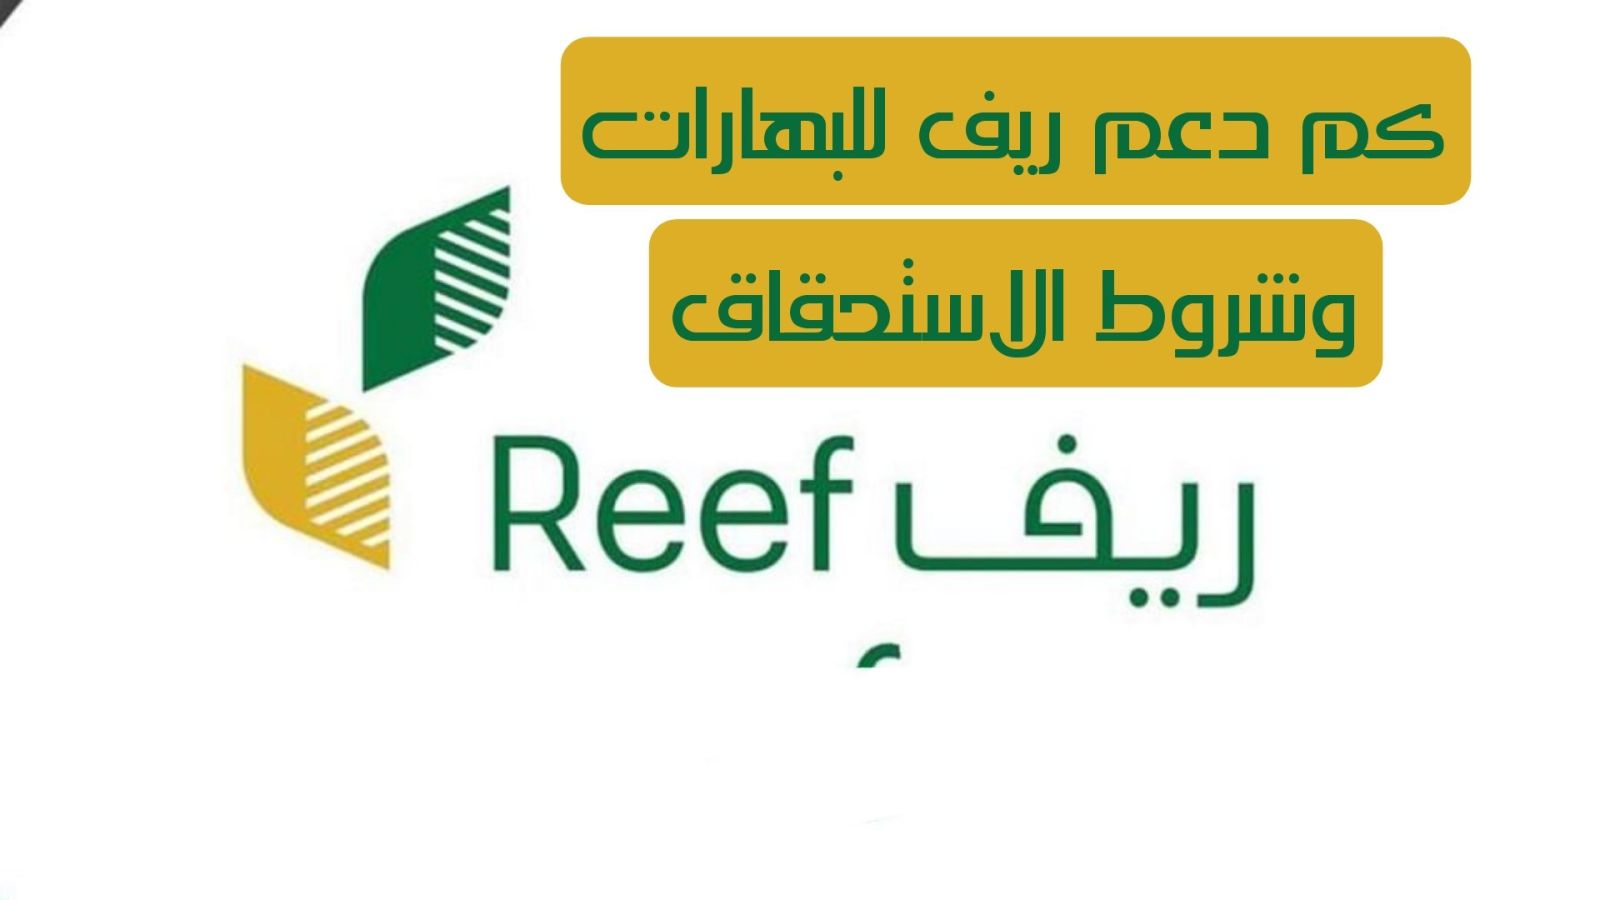 بخطوات بسيطة.. كيفية الاستعلام عن دعم ريف 1445 وشروط استحقاق الدعم الريفي في السعودية REEF